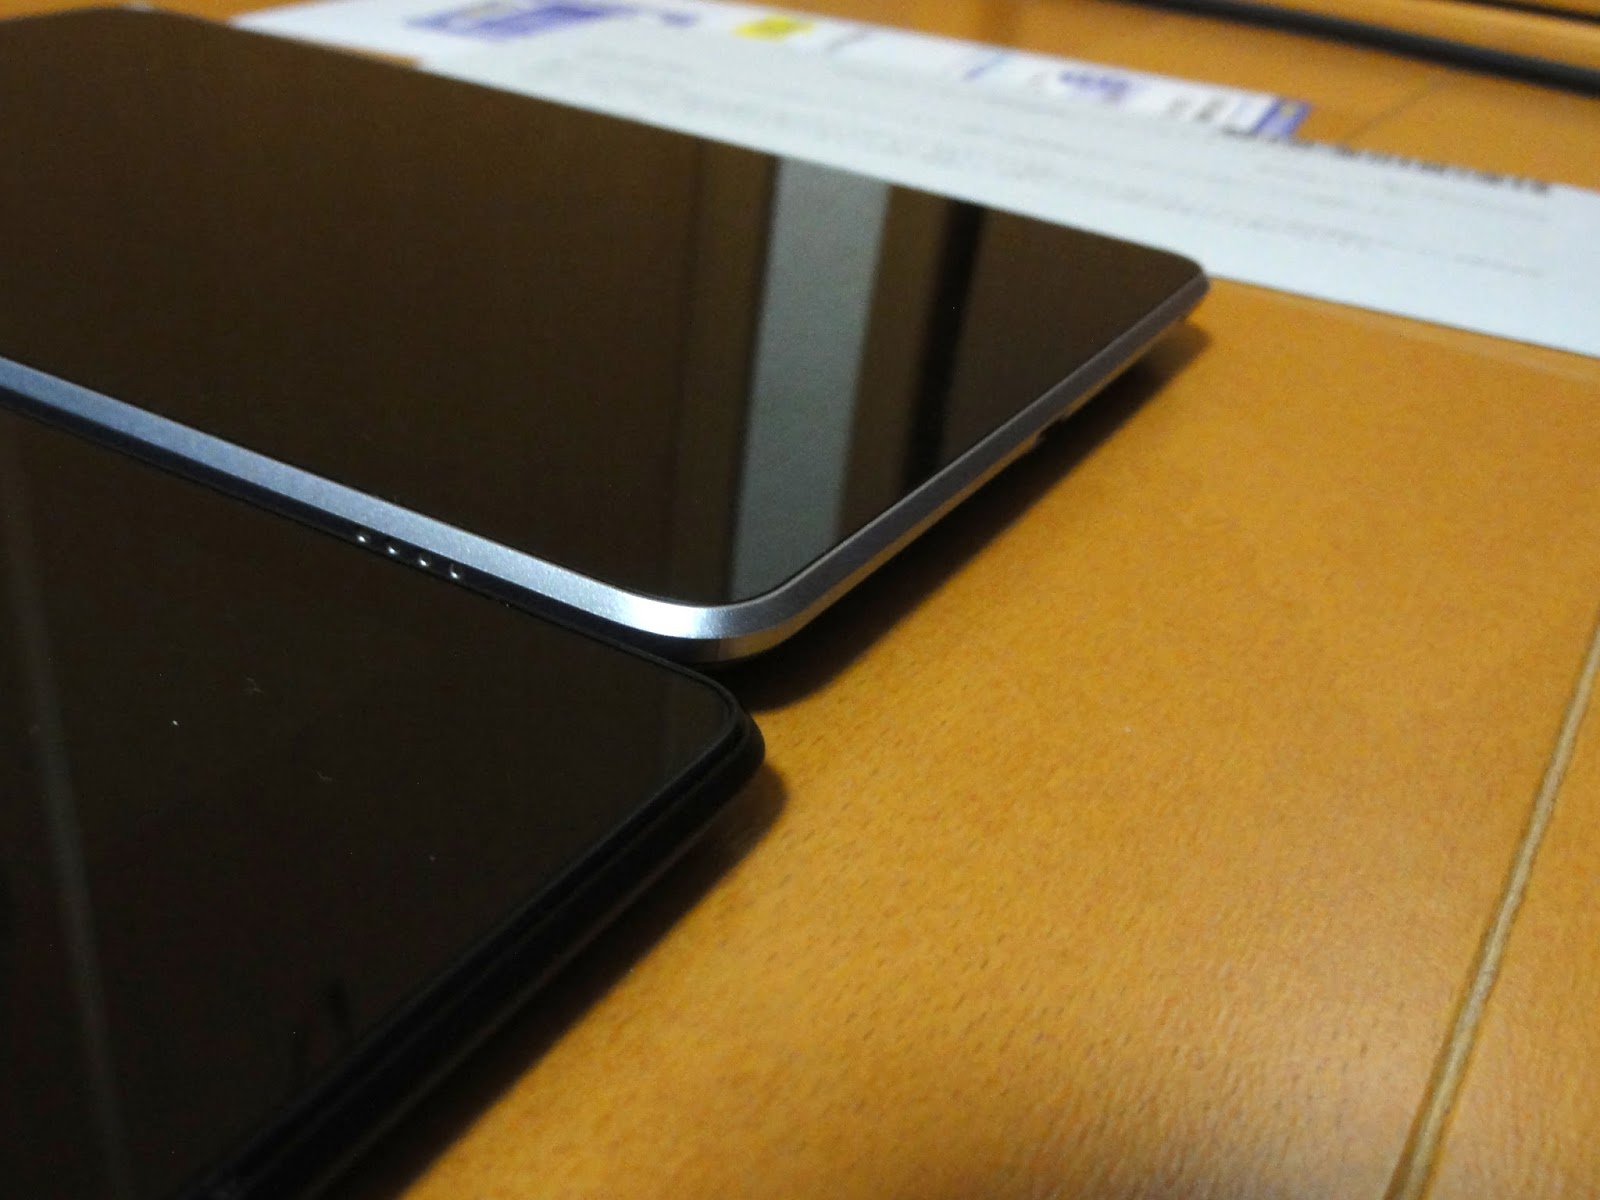 ひらぎまライフ Google Nexus 7 13 Lte Iijmioプリペイドパック フライング到着